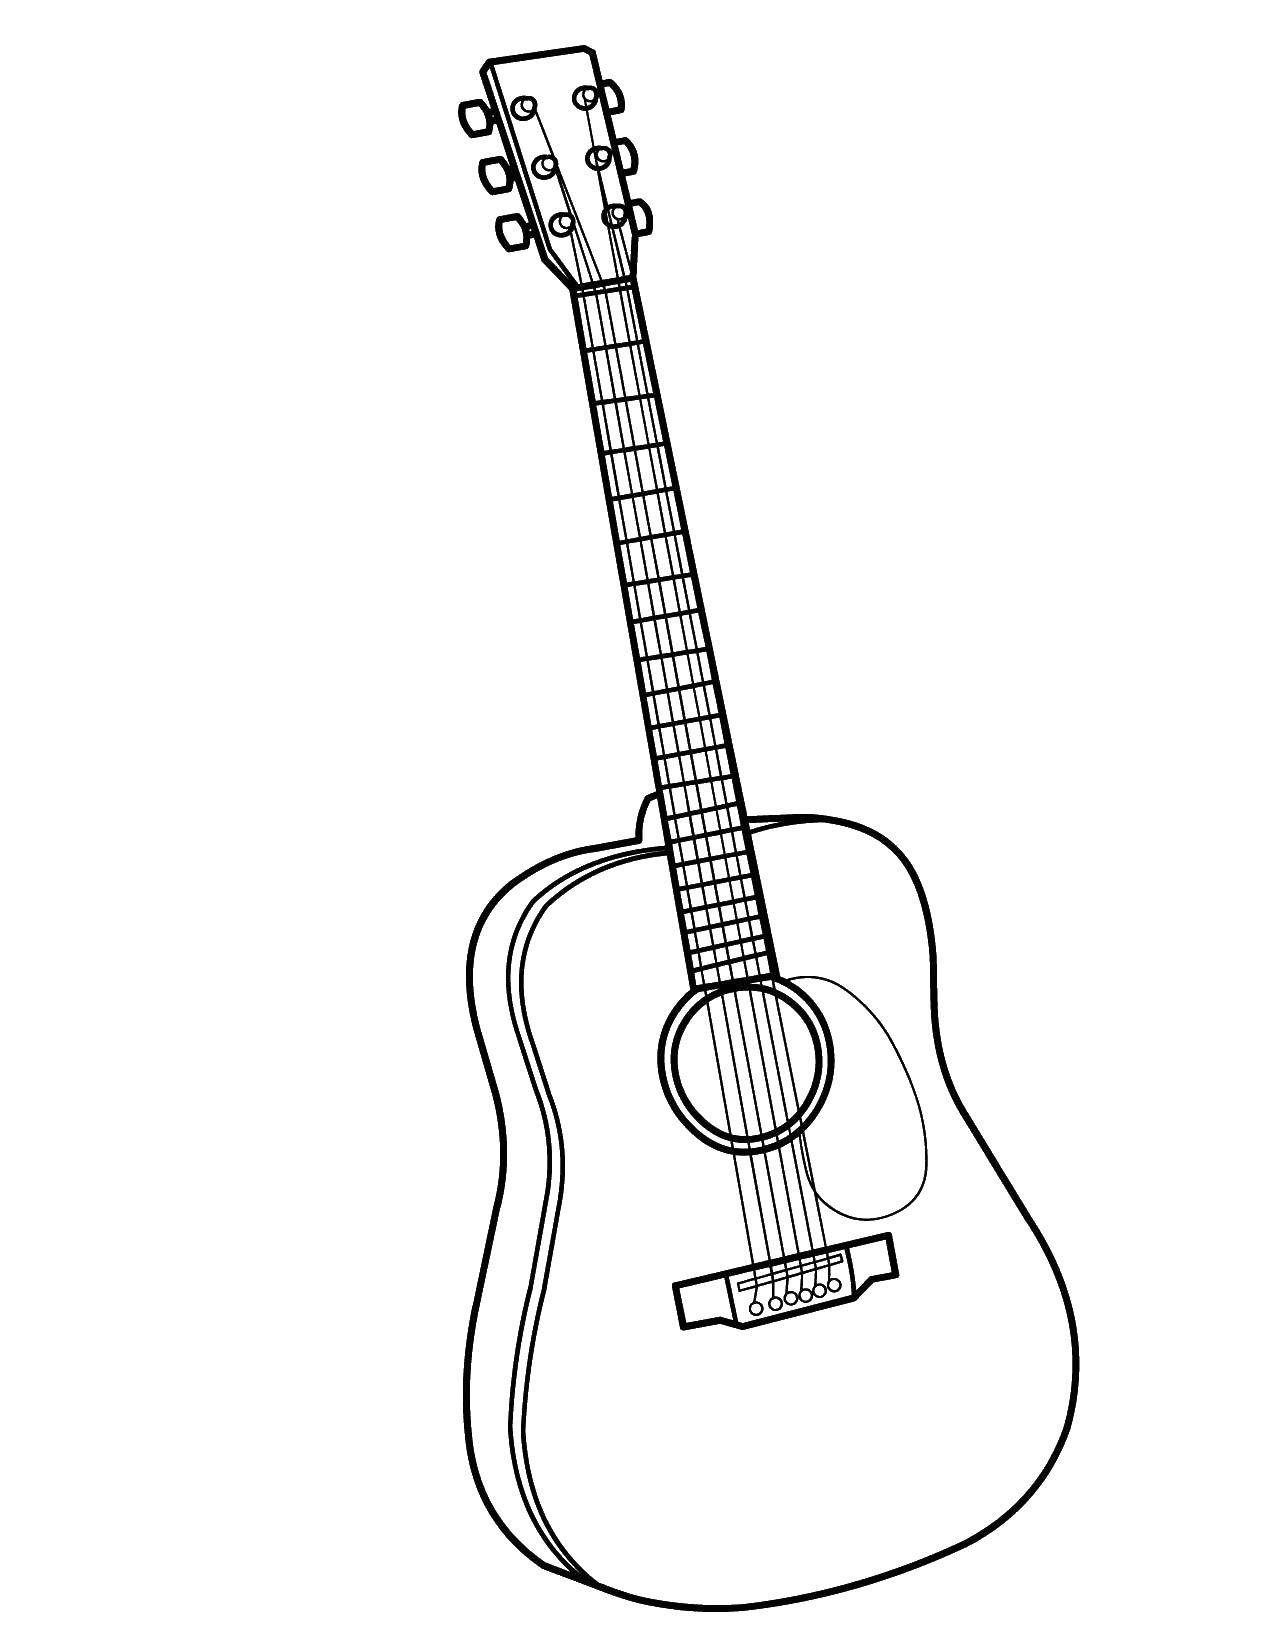 Название: Раскраска Гитара музыкальный инструмент. Категория: Музыкальный инструмент. Теги: Музыкальный инструмент, гитара.